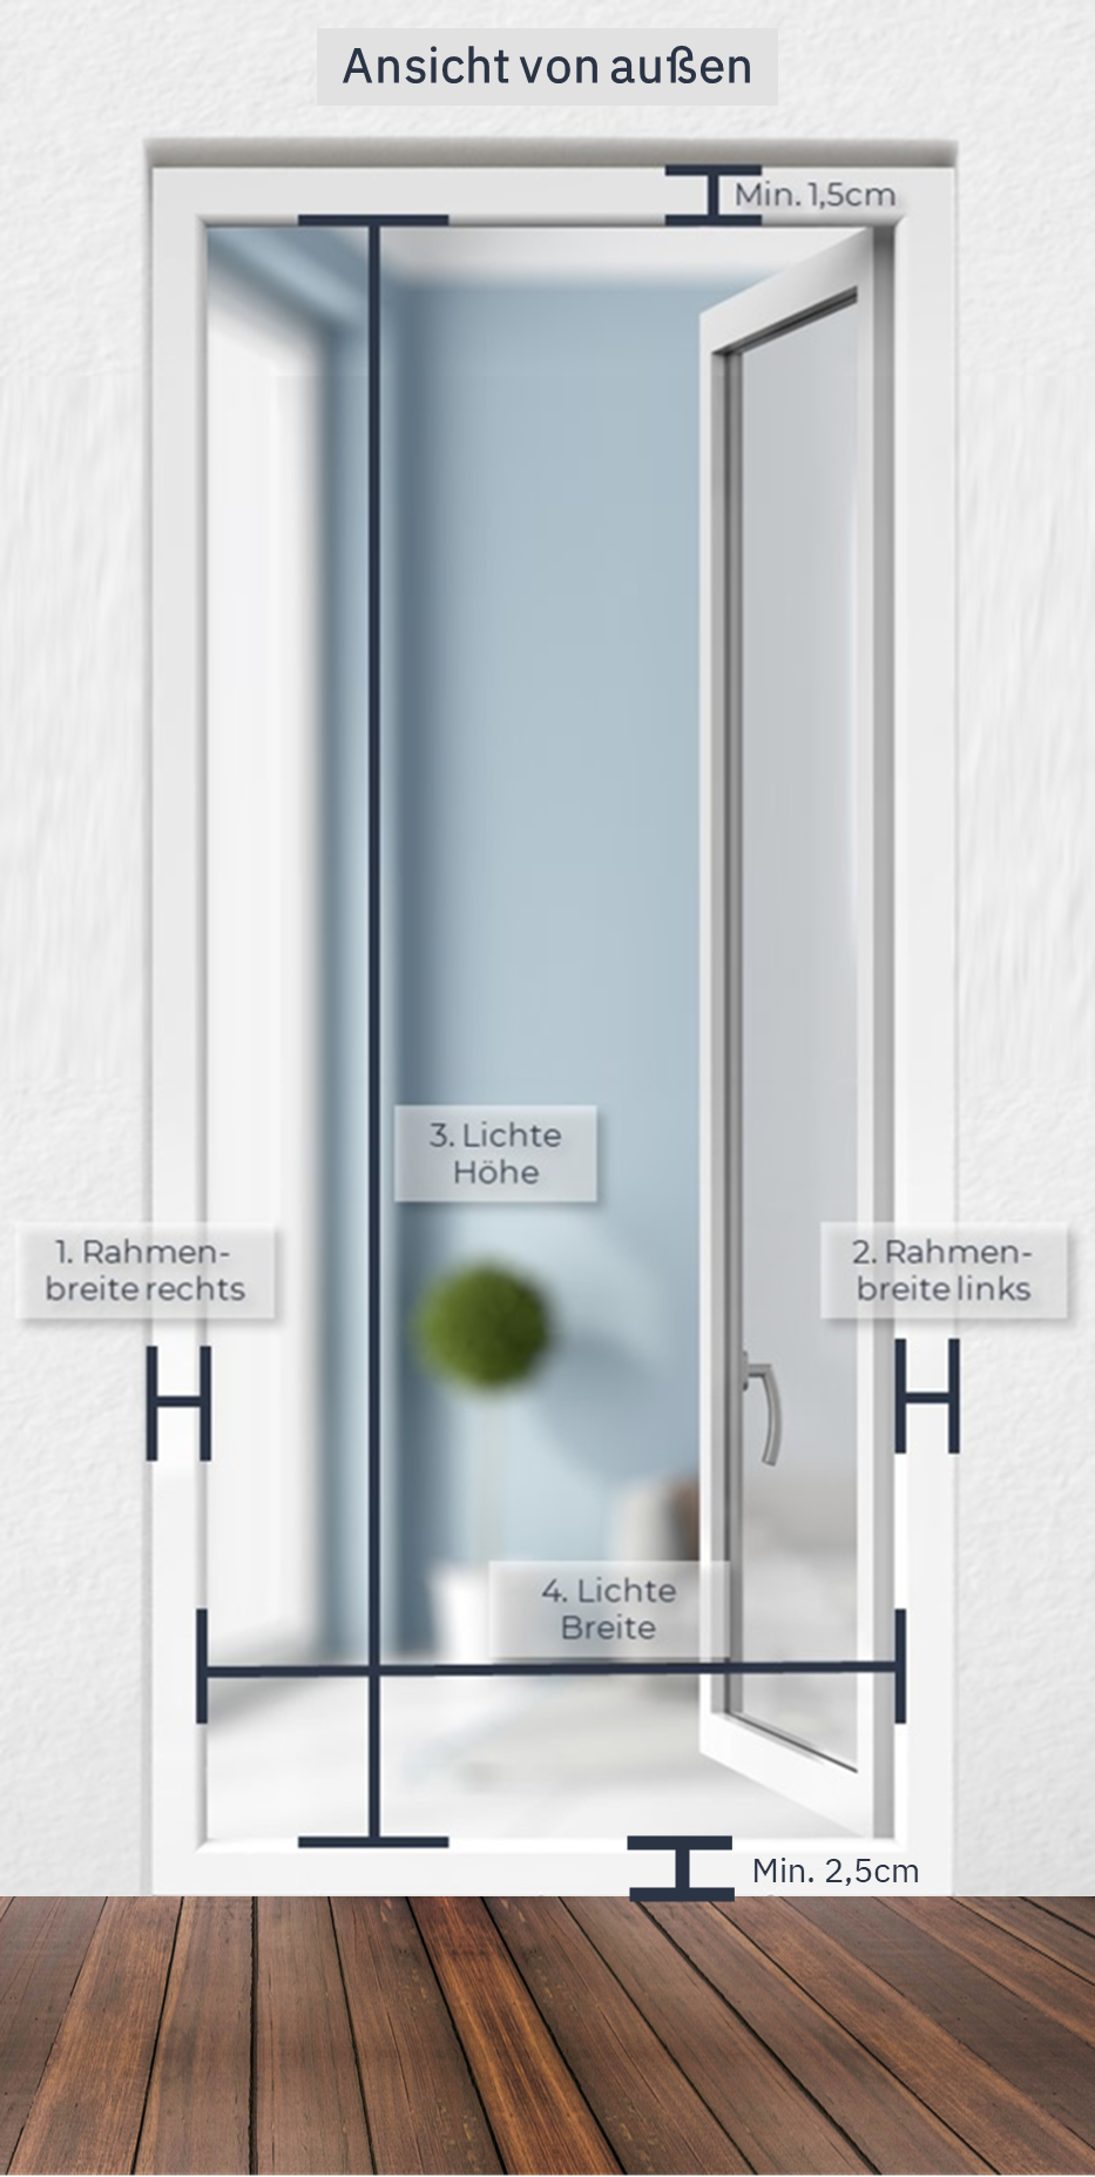 Aluminiumprofile CLIP`N`SHADE Aussenrollo CLIP`N`SHADE, Rollo Klemmmontage, Balkontüren, Fenster, am hochwertige Außen Grau für